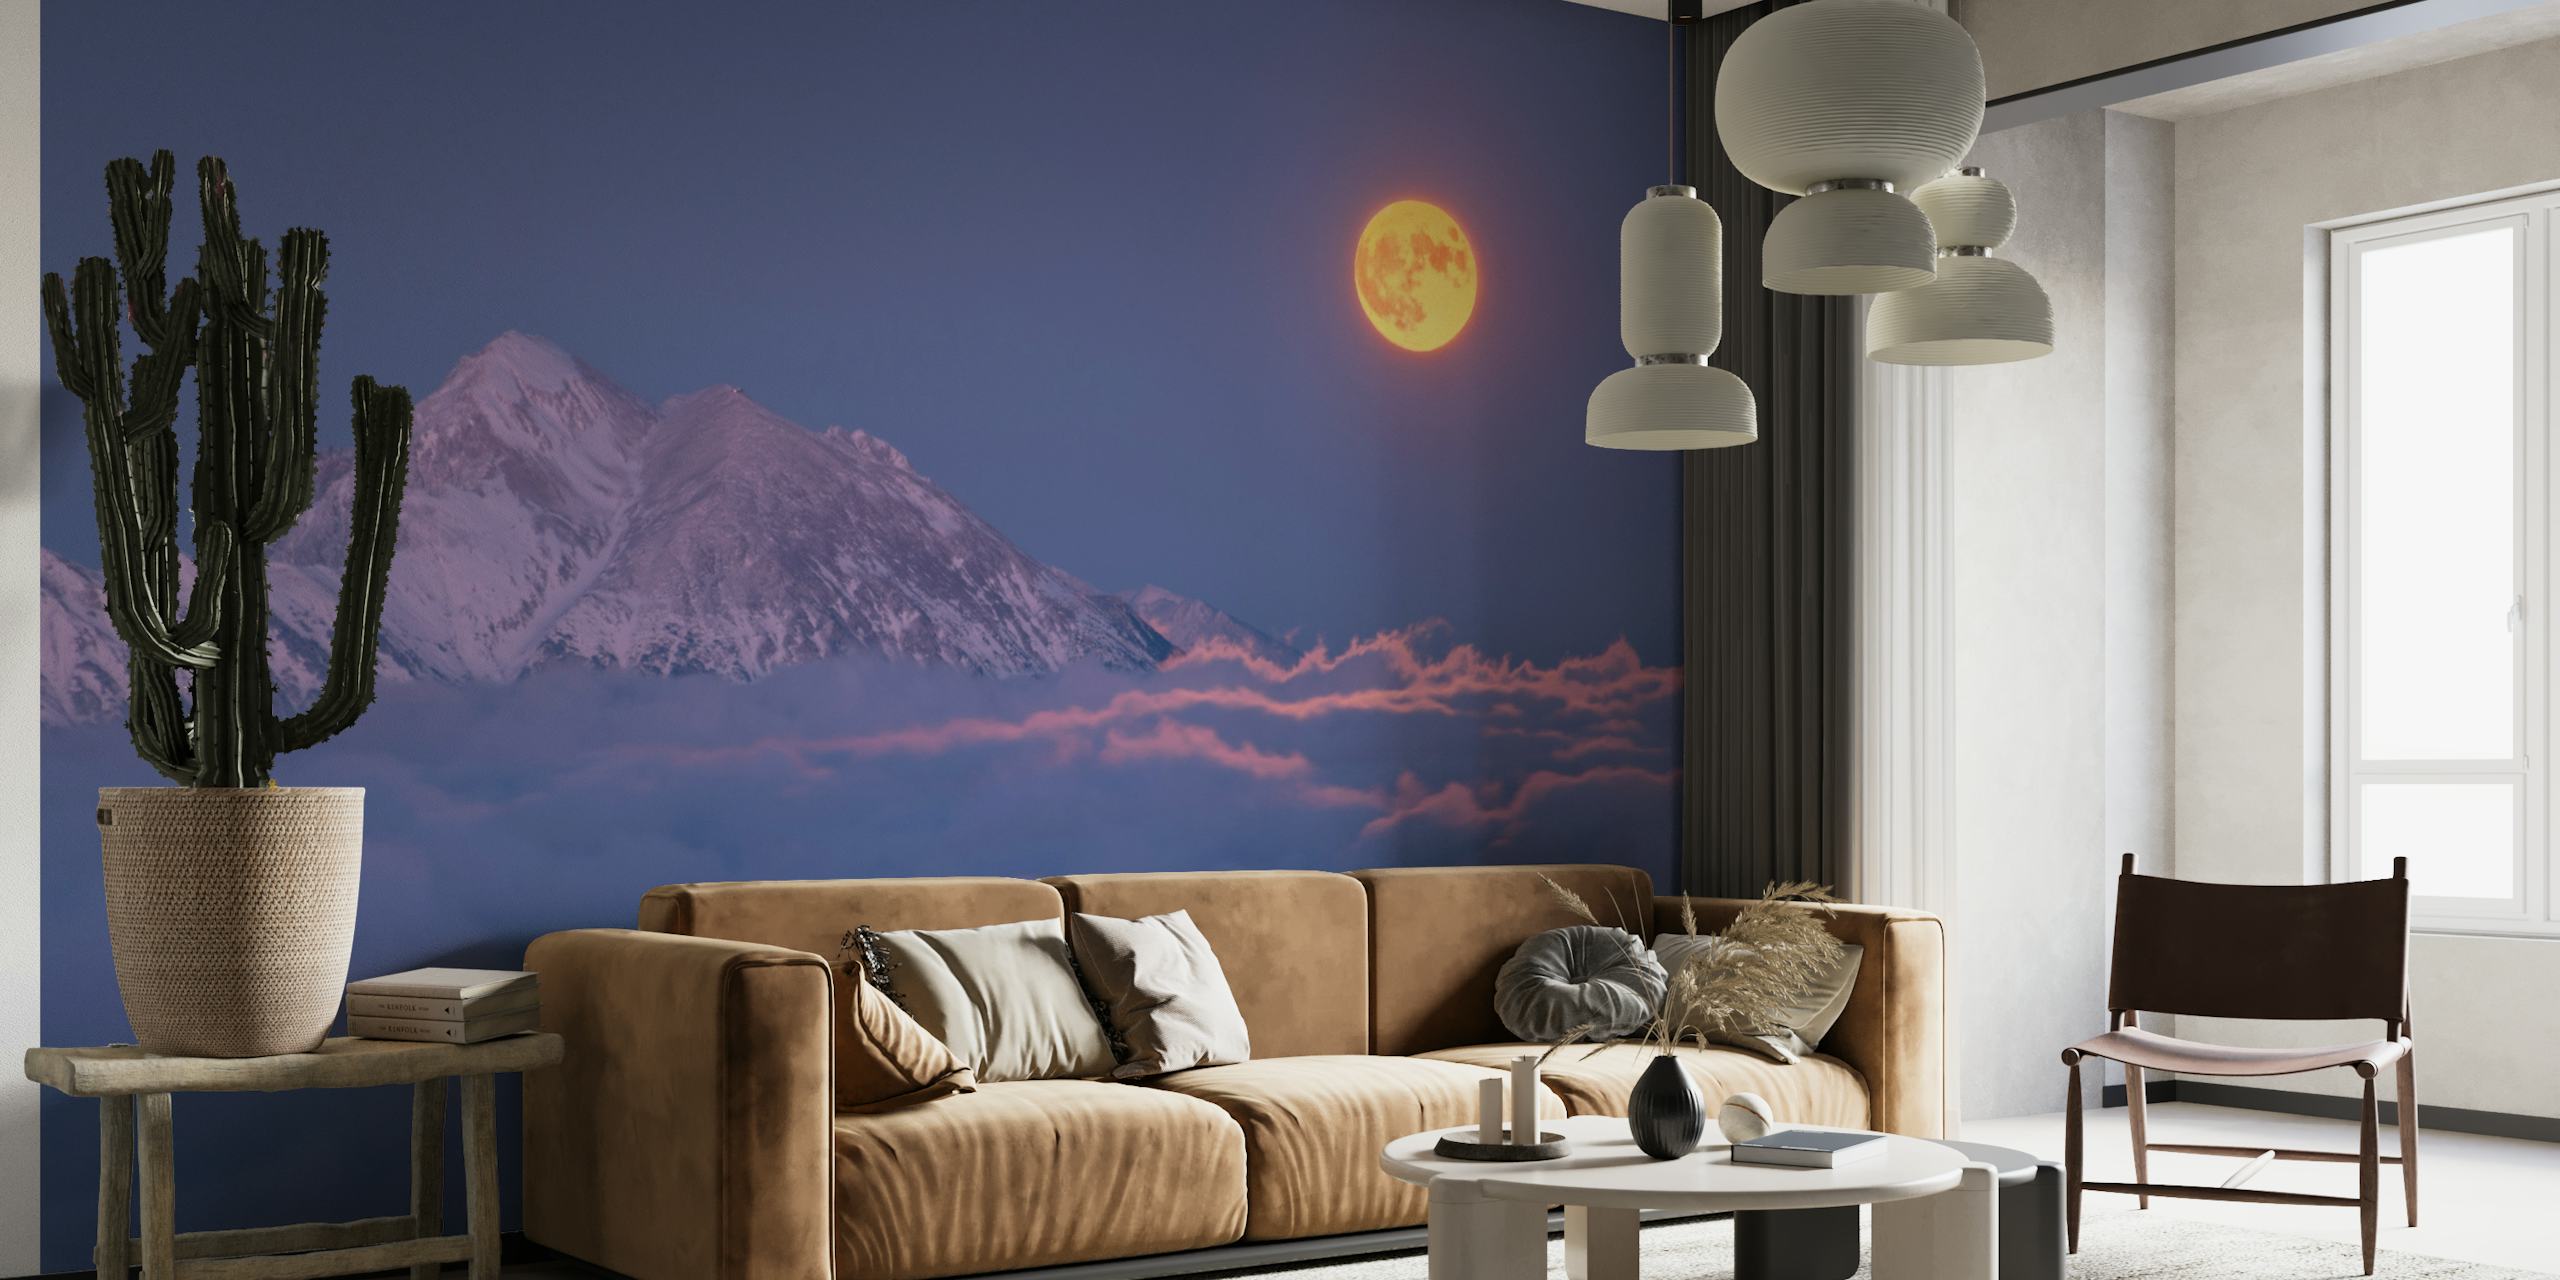 Super moon rises wallpaper